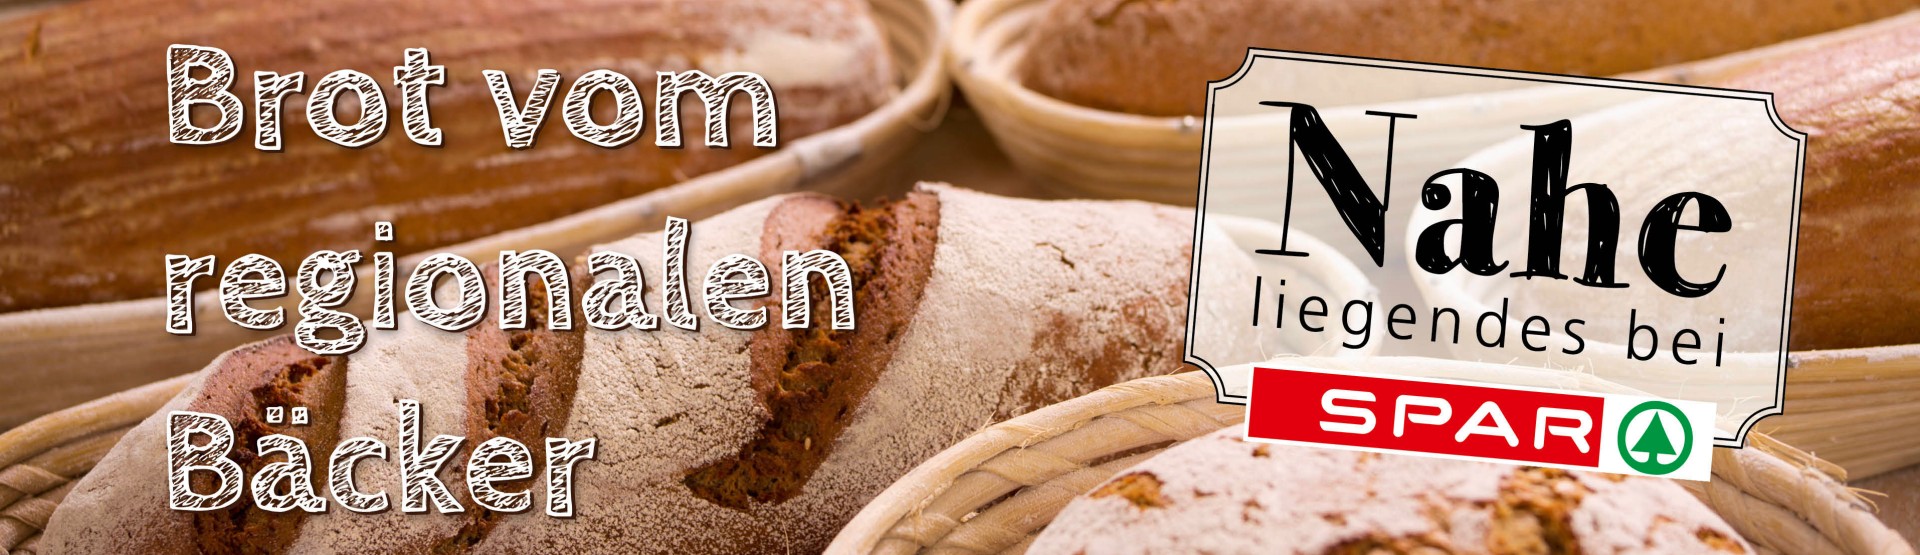 "Brot vom regionalen Bäcker" Brot in Körbe